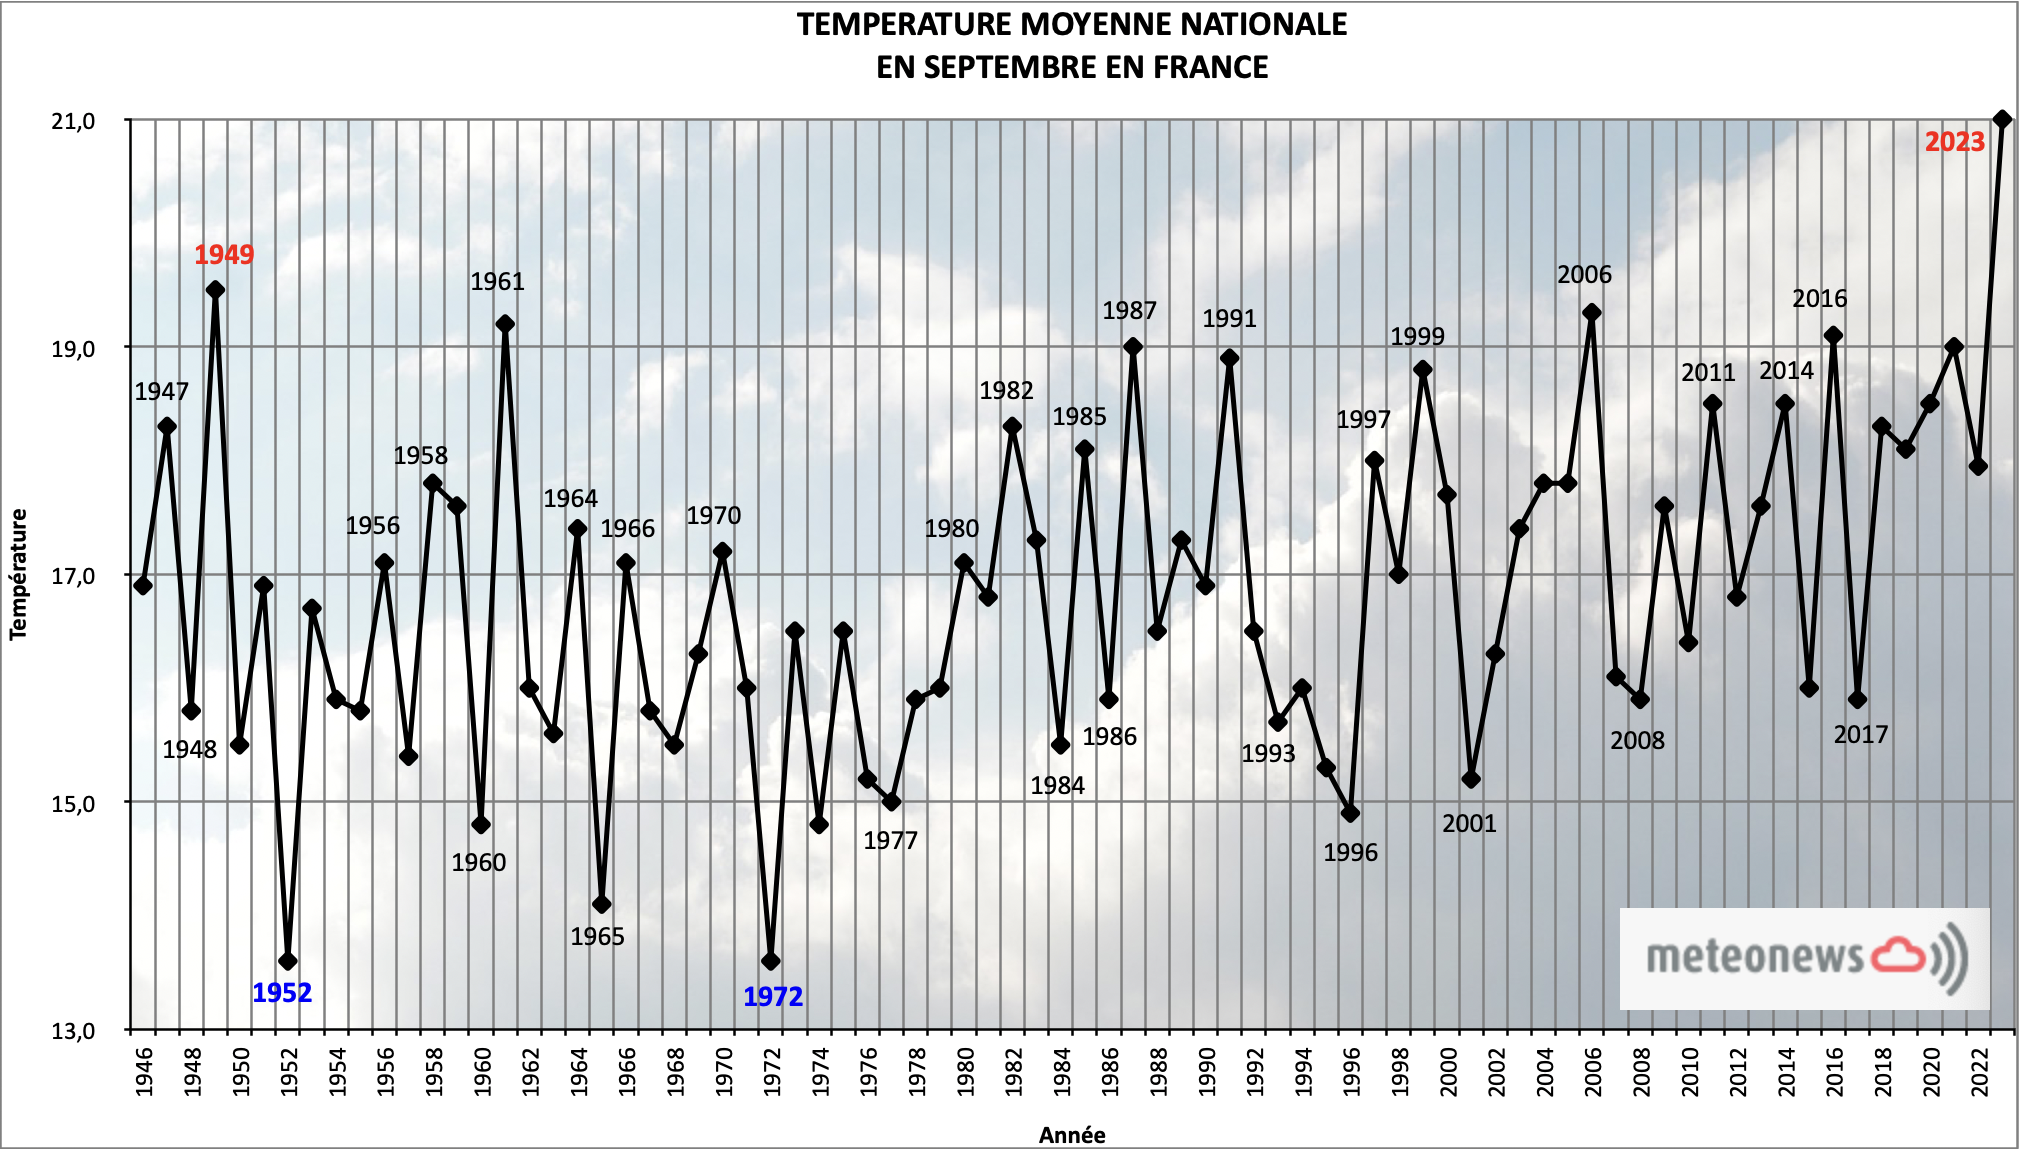 Température moyenne nationale mensuelle en septembre en France; Source: MeteoNews